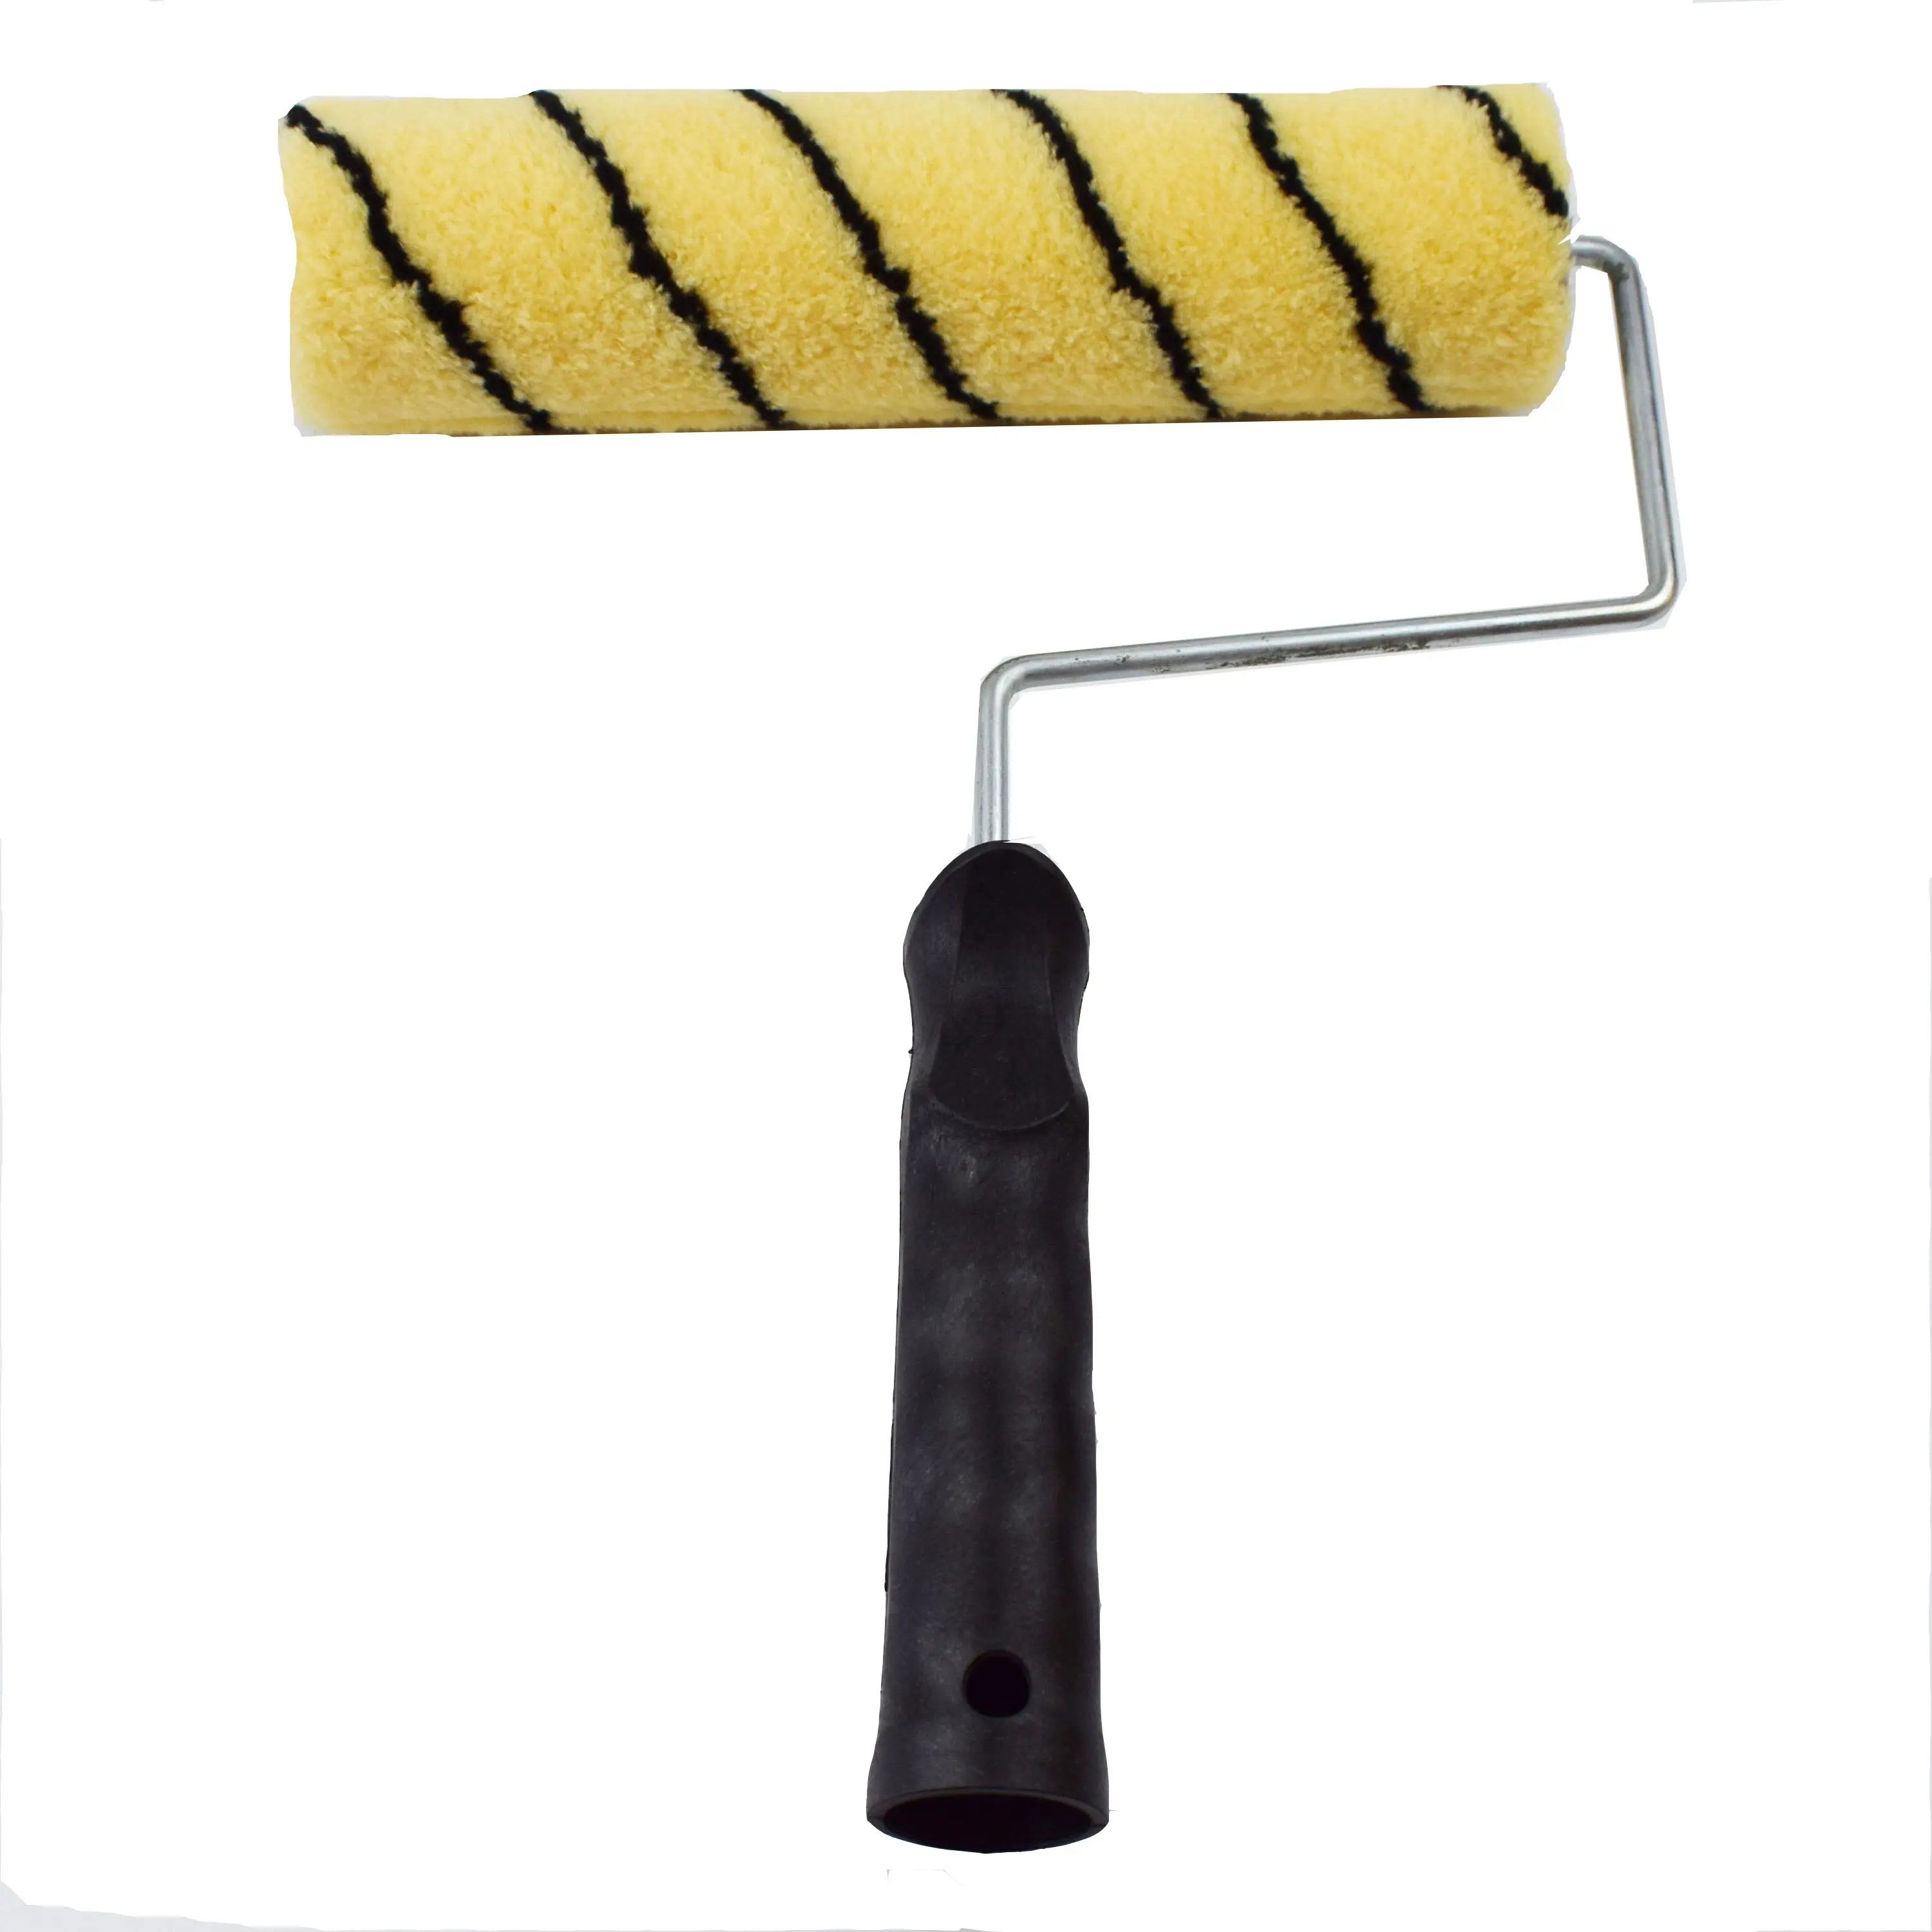 Vente chaude peau de tigre manche noir polyester fond jaune bande noire brosse à rouleau industrielle